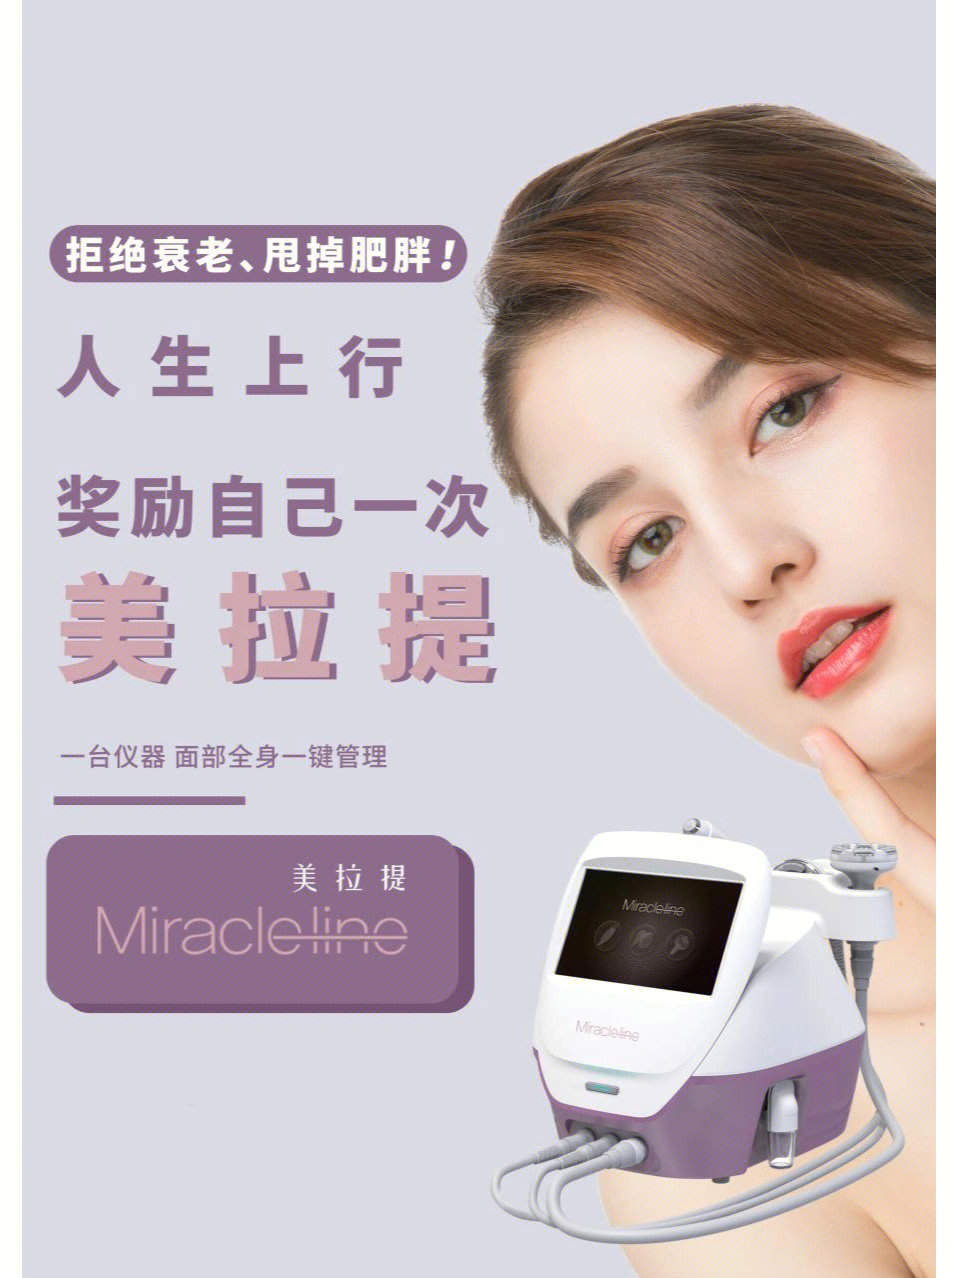 科技美肤仪,恩盛源于韩国,畅销的全球的美容仪器,这个rf技术,热热的